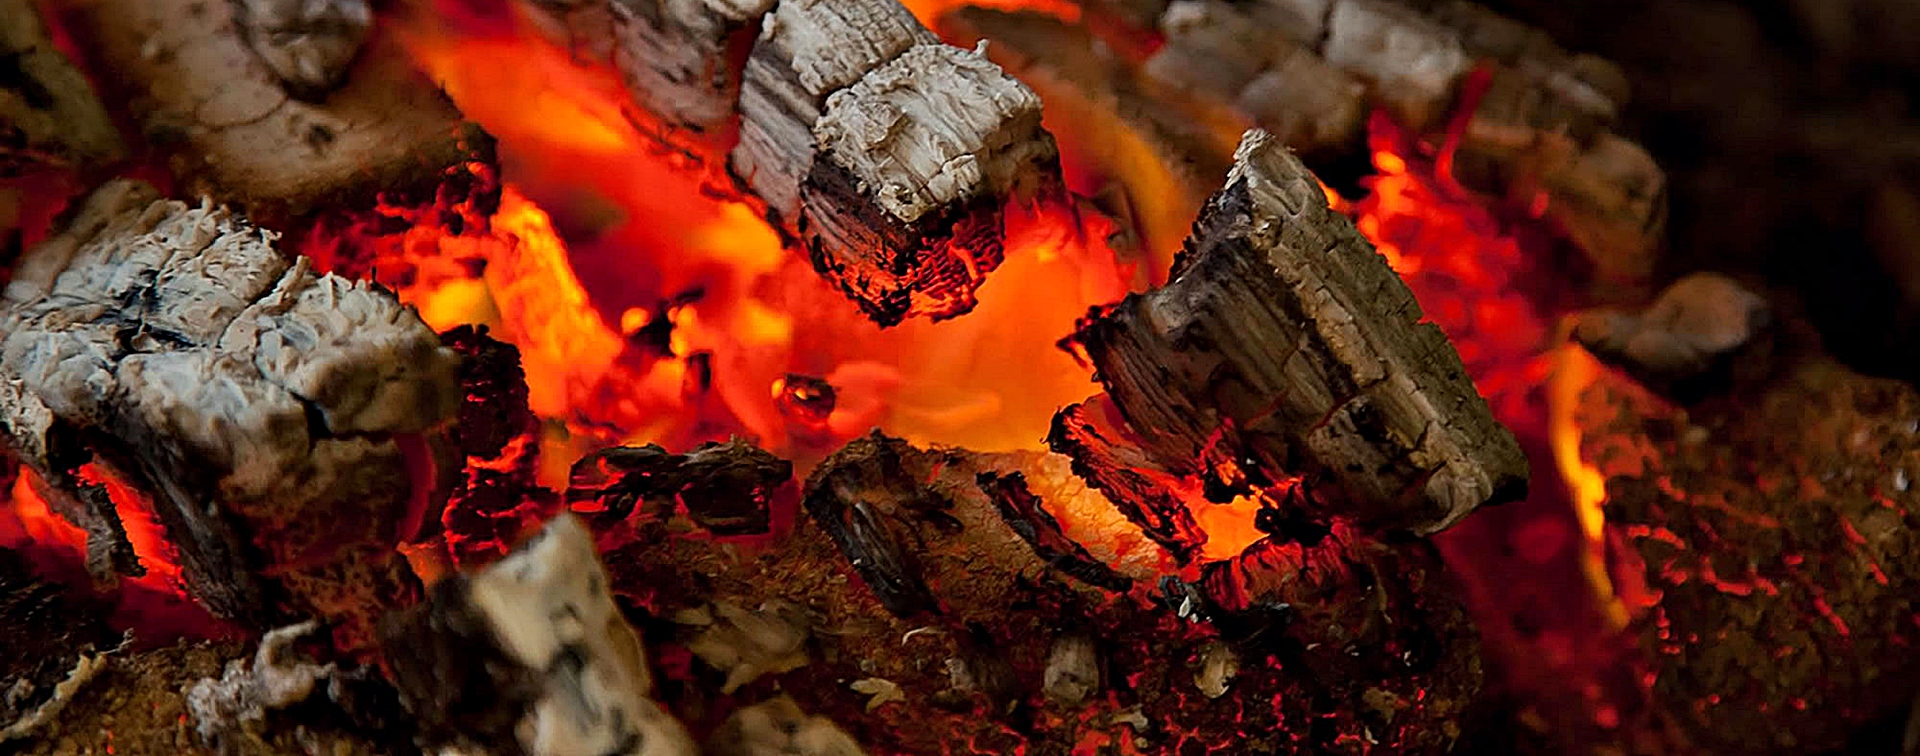 Problemi accensione stufa a legna (fumo) + uso alcool 